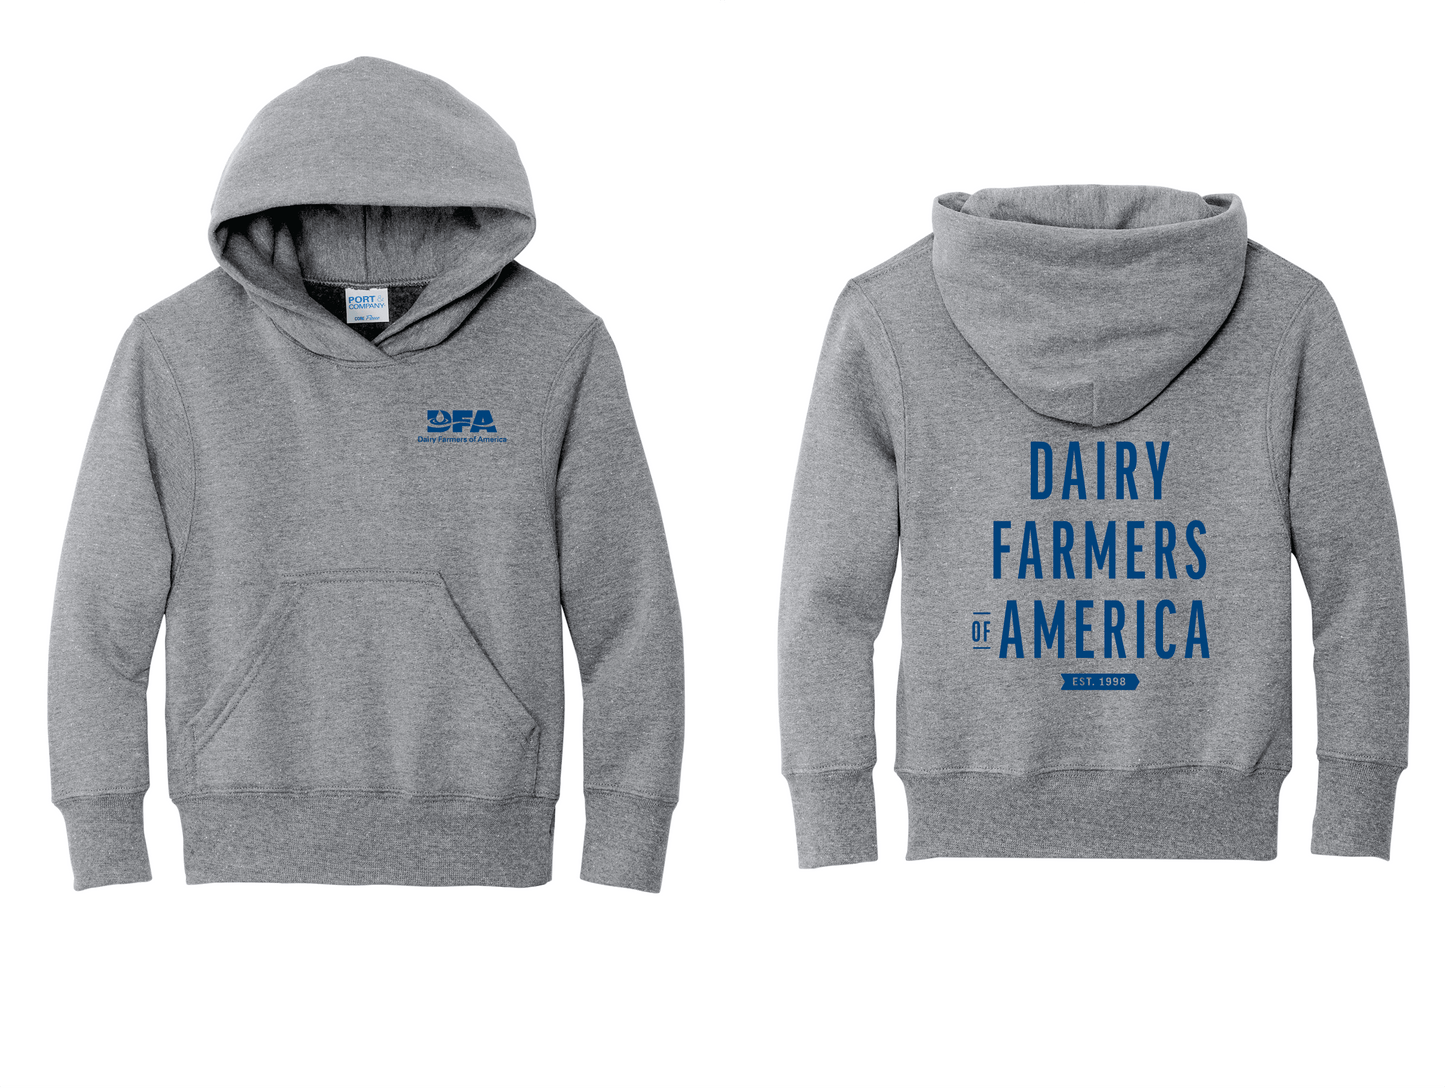 "DAIRY FARMERS OF AMERICA, est. 1998" youth sweatshirt hoodie